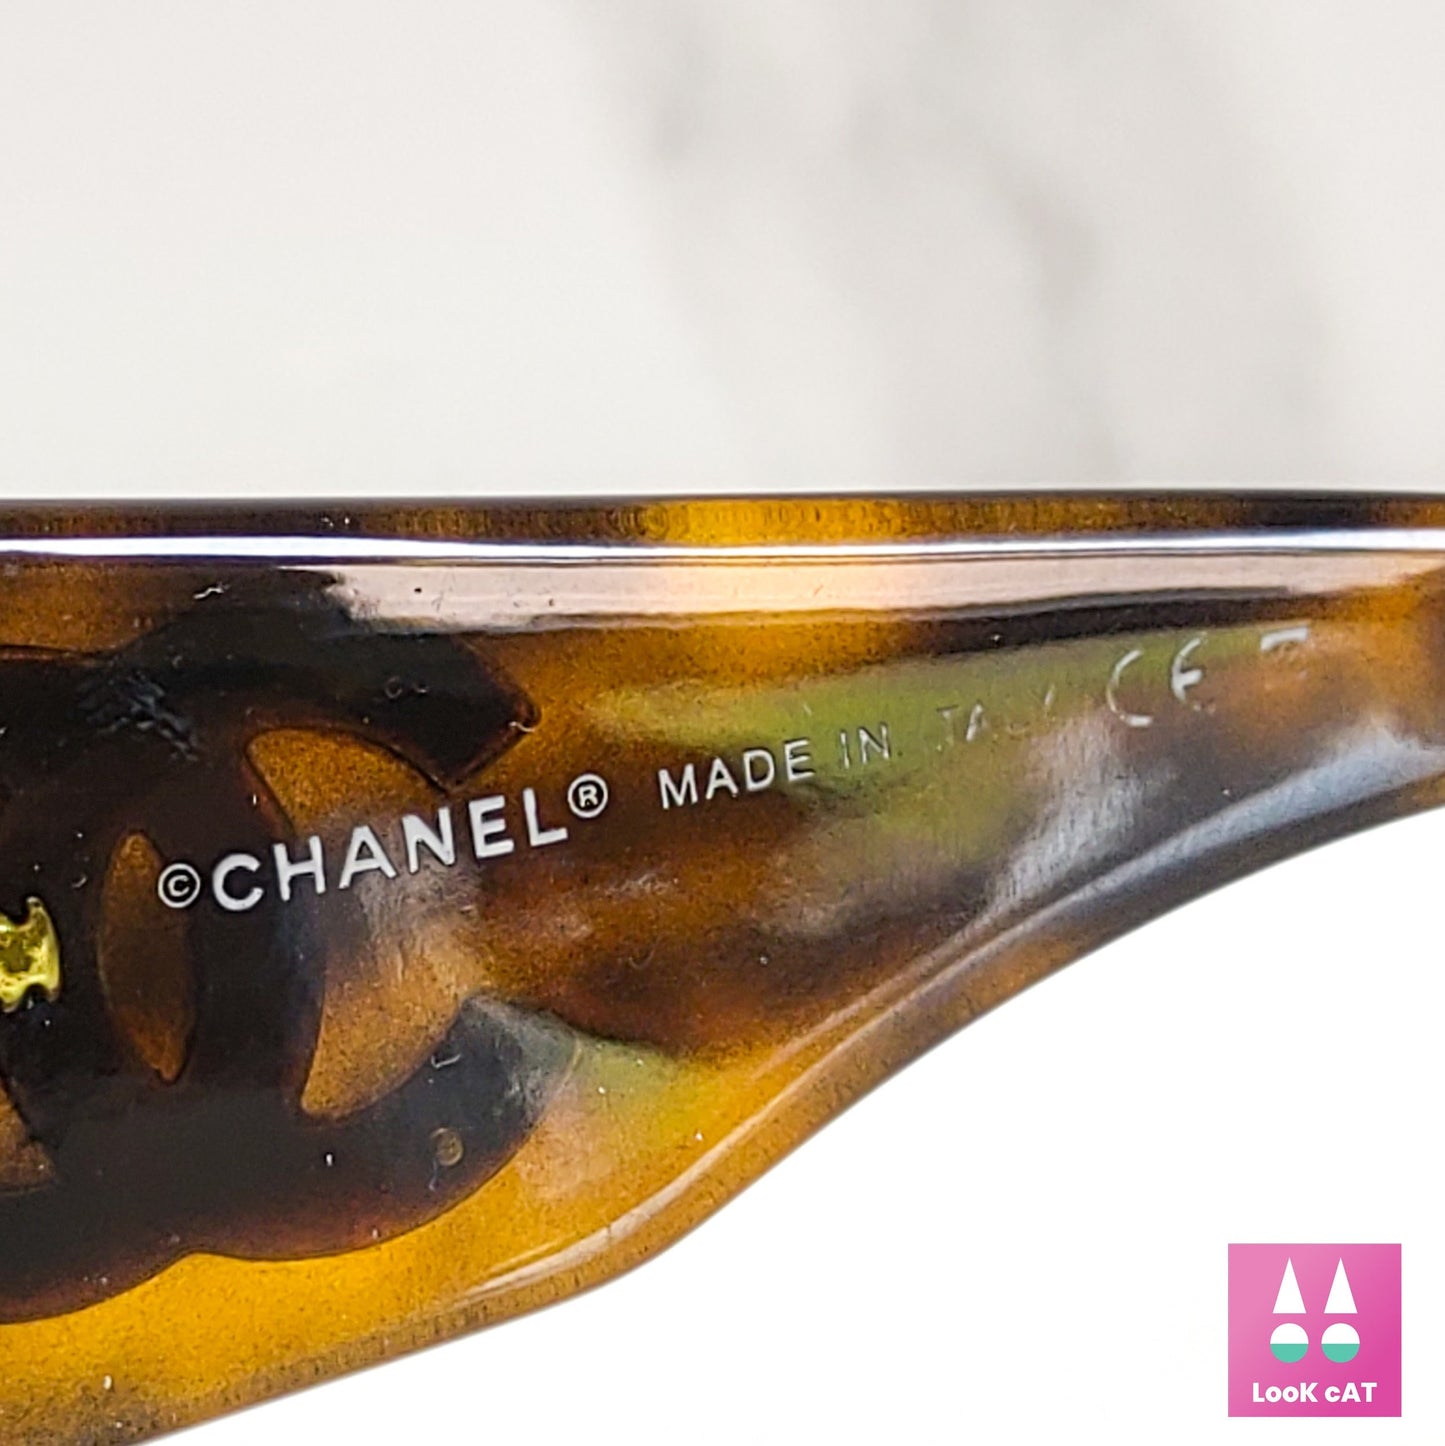 Occhiali da sole Chanel modello 6022 vintage y2k lunetta brille tonalità anni '90